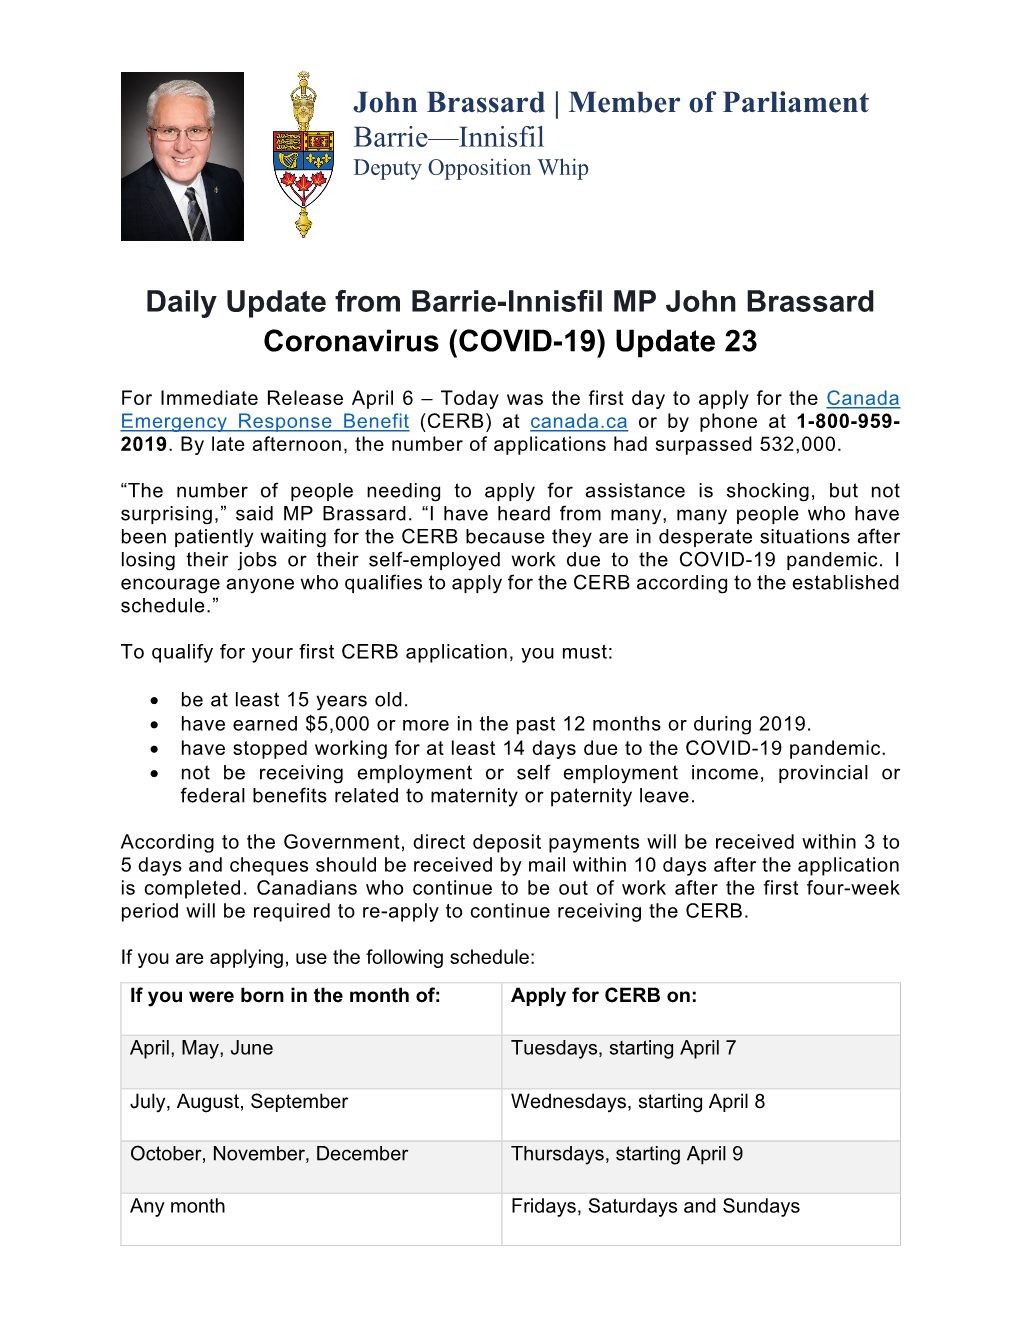 Daily Update from Barrie-Innisfil MP John Brassard Coronavirus (COVID-19) Update 23